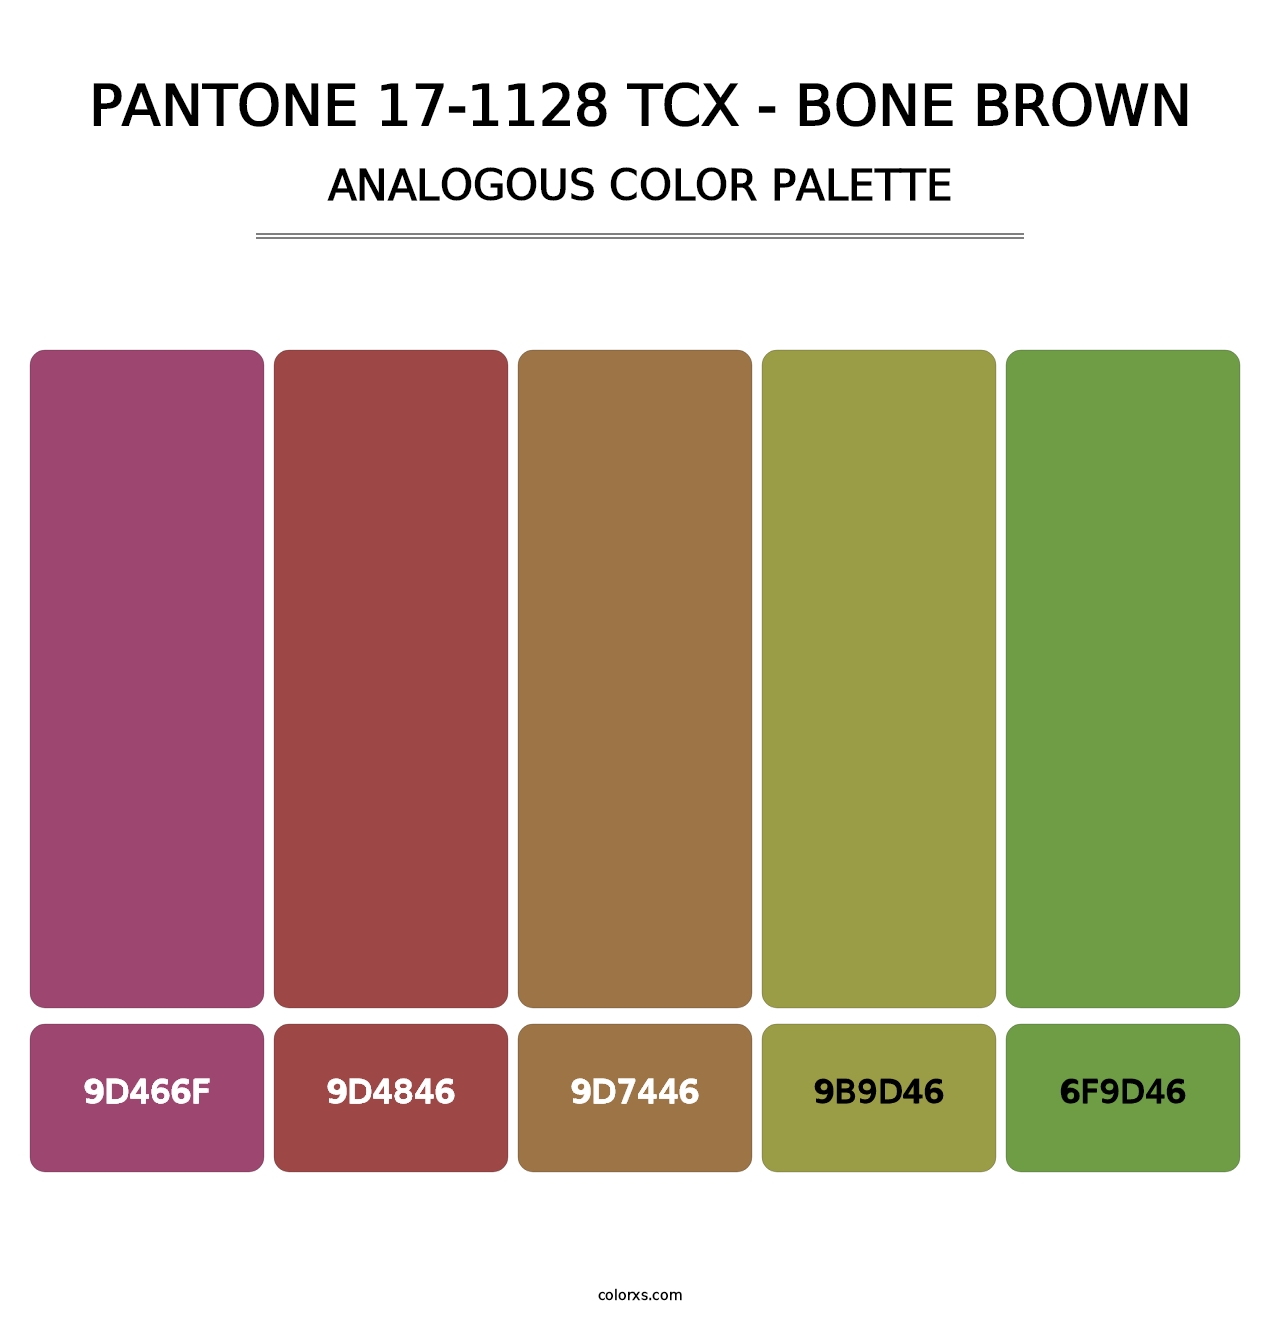 PANTONE 17-1128 TCX - Bone Brown - Analogous Color Palette